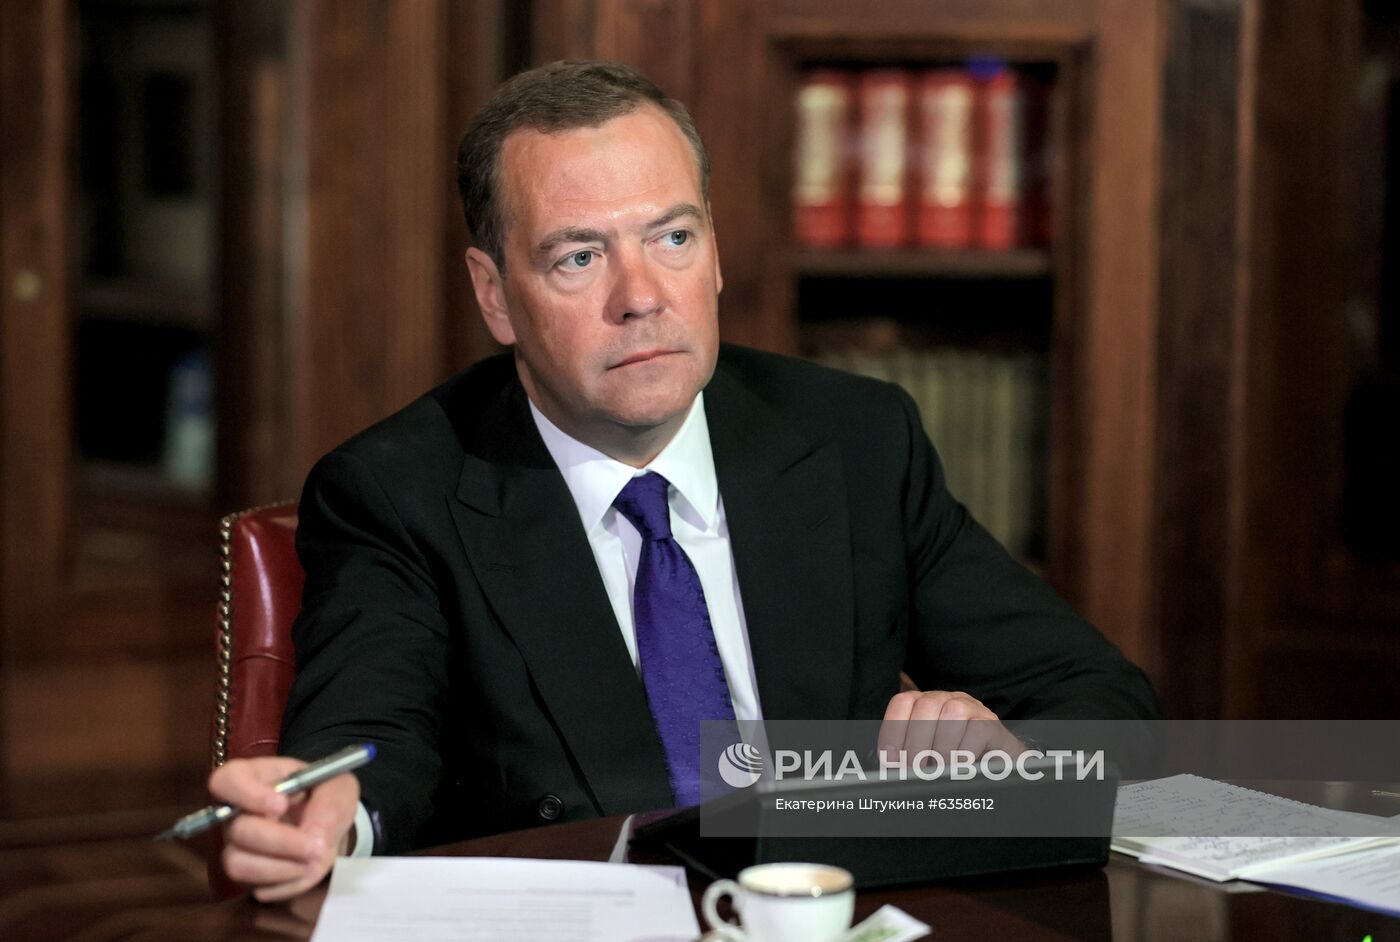 Заместитель председателя Совета безопасности РФ Д. Медведев провел заседание МПС МШУ "Сколково"